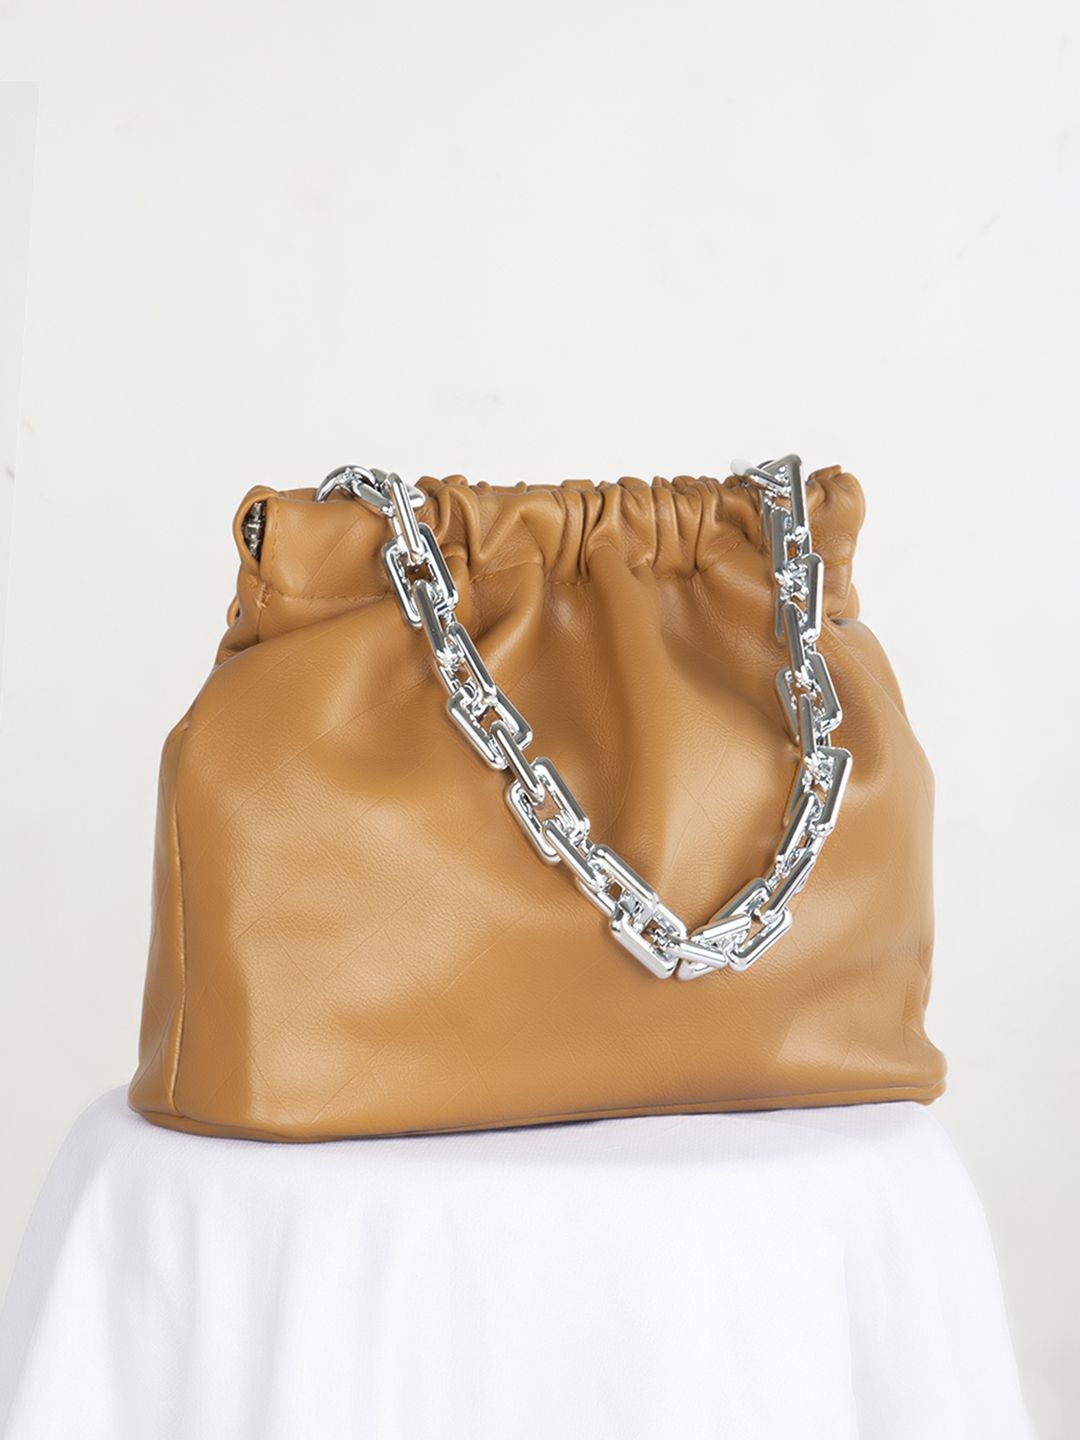 Kazo Handbags Bags - Buy Kazo Handbags Bags online in India